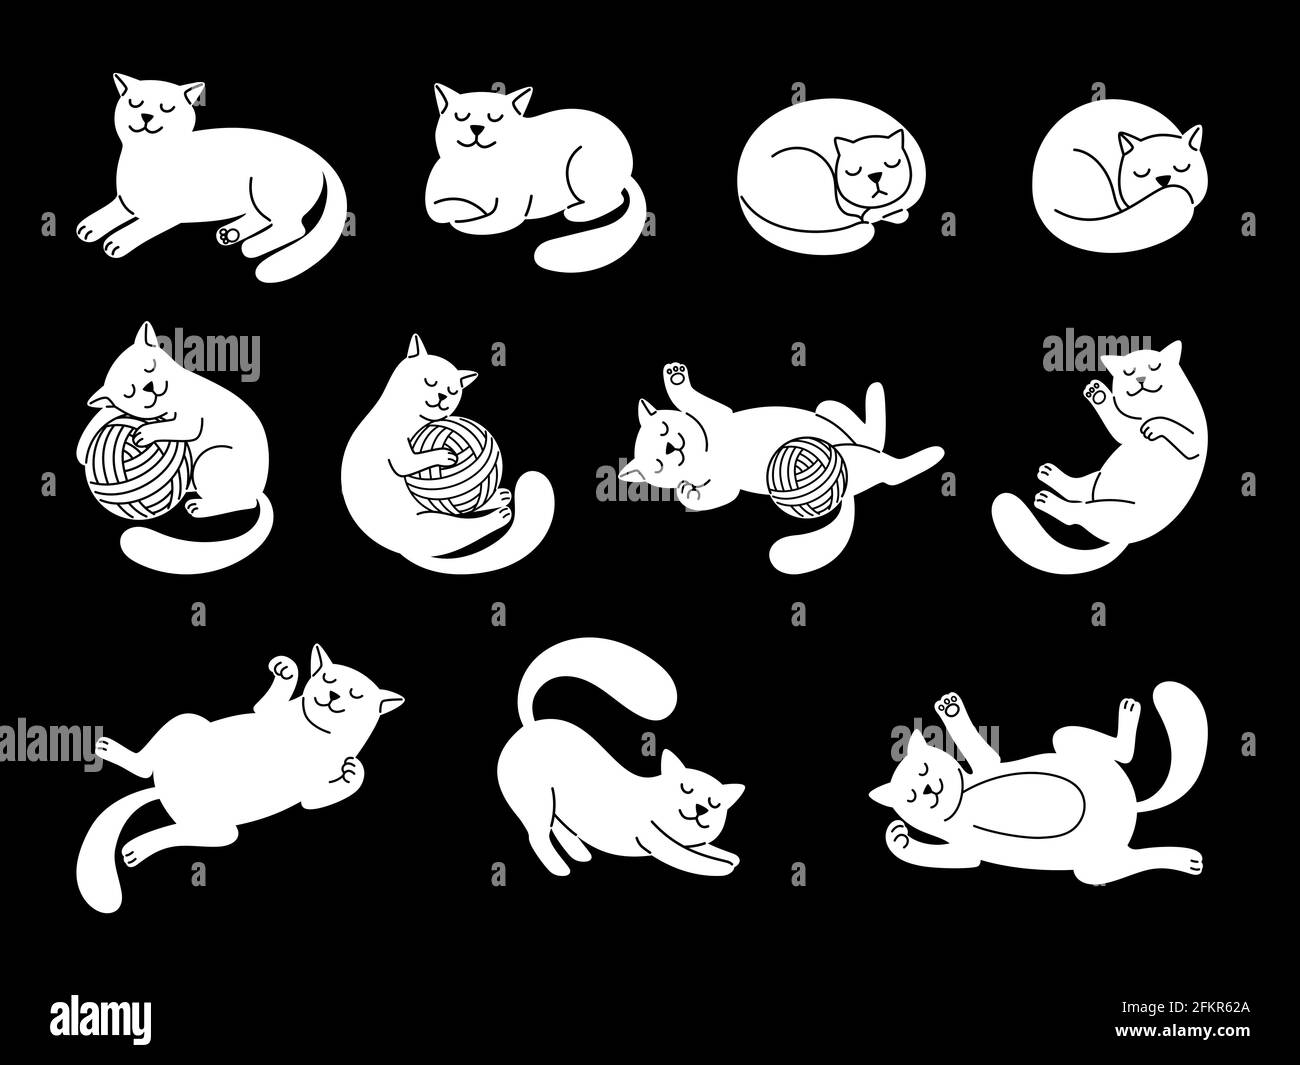 Personnage de chat en forme de doodle blanc. Illustration de vecteur de chats domestiques mignons, esquisse de chatte drôle, couché et dormant dessiné à la main, sautant et jouant des chatons sur fond noir Illustration de Vecteur